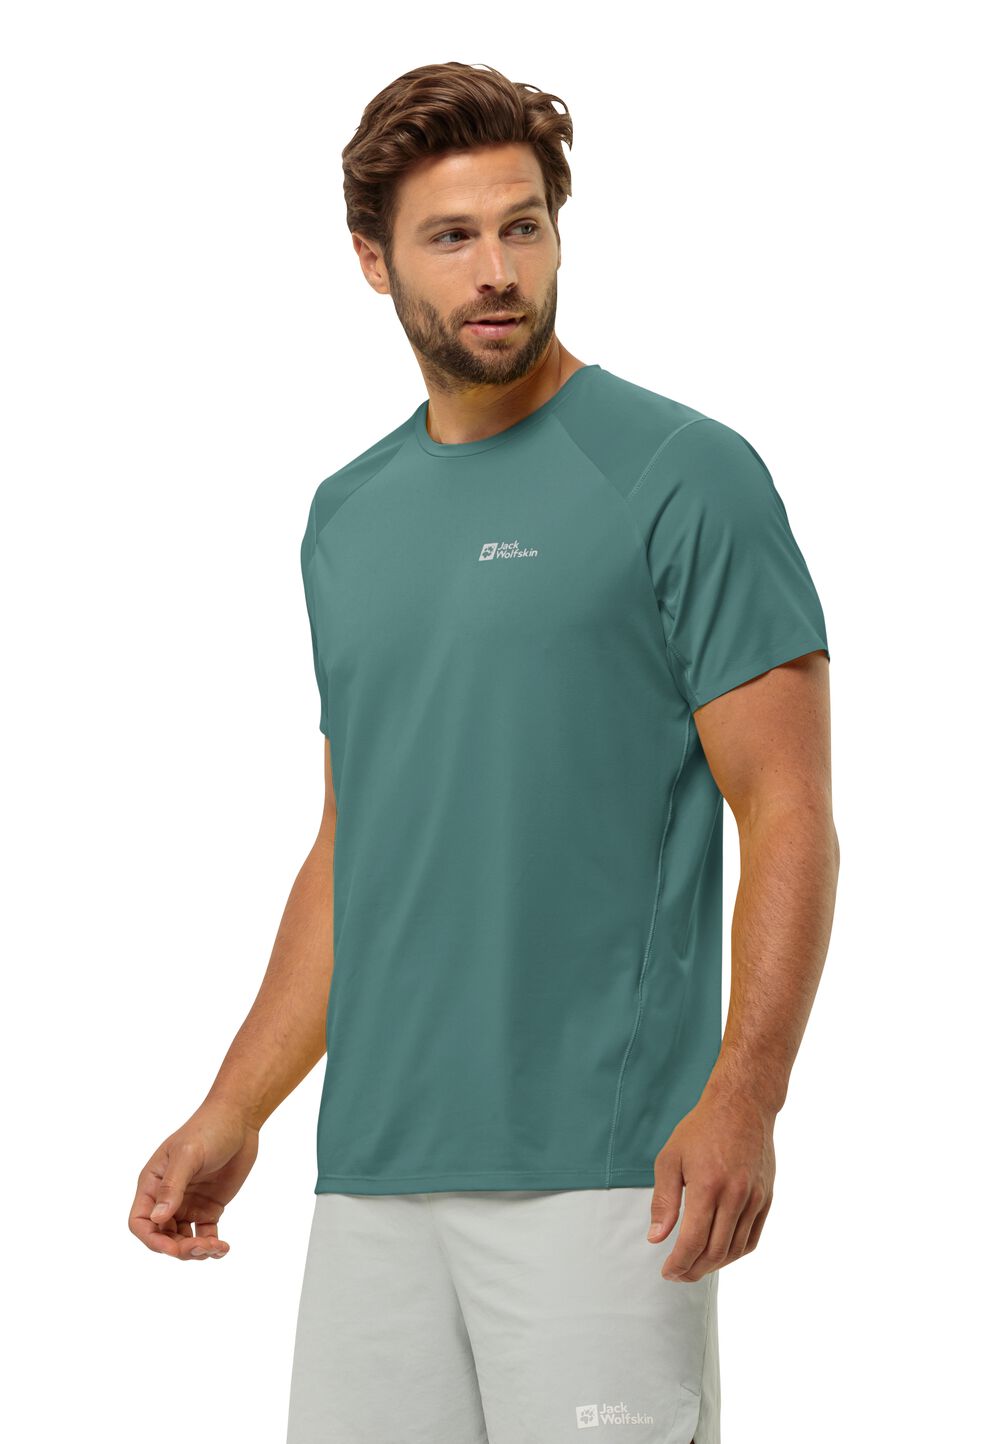 Jack Wolfskin Prelight Chill T-Shirt Men Functioneel shirt Heren XXL jade green jade green